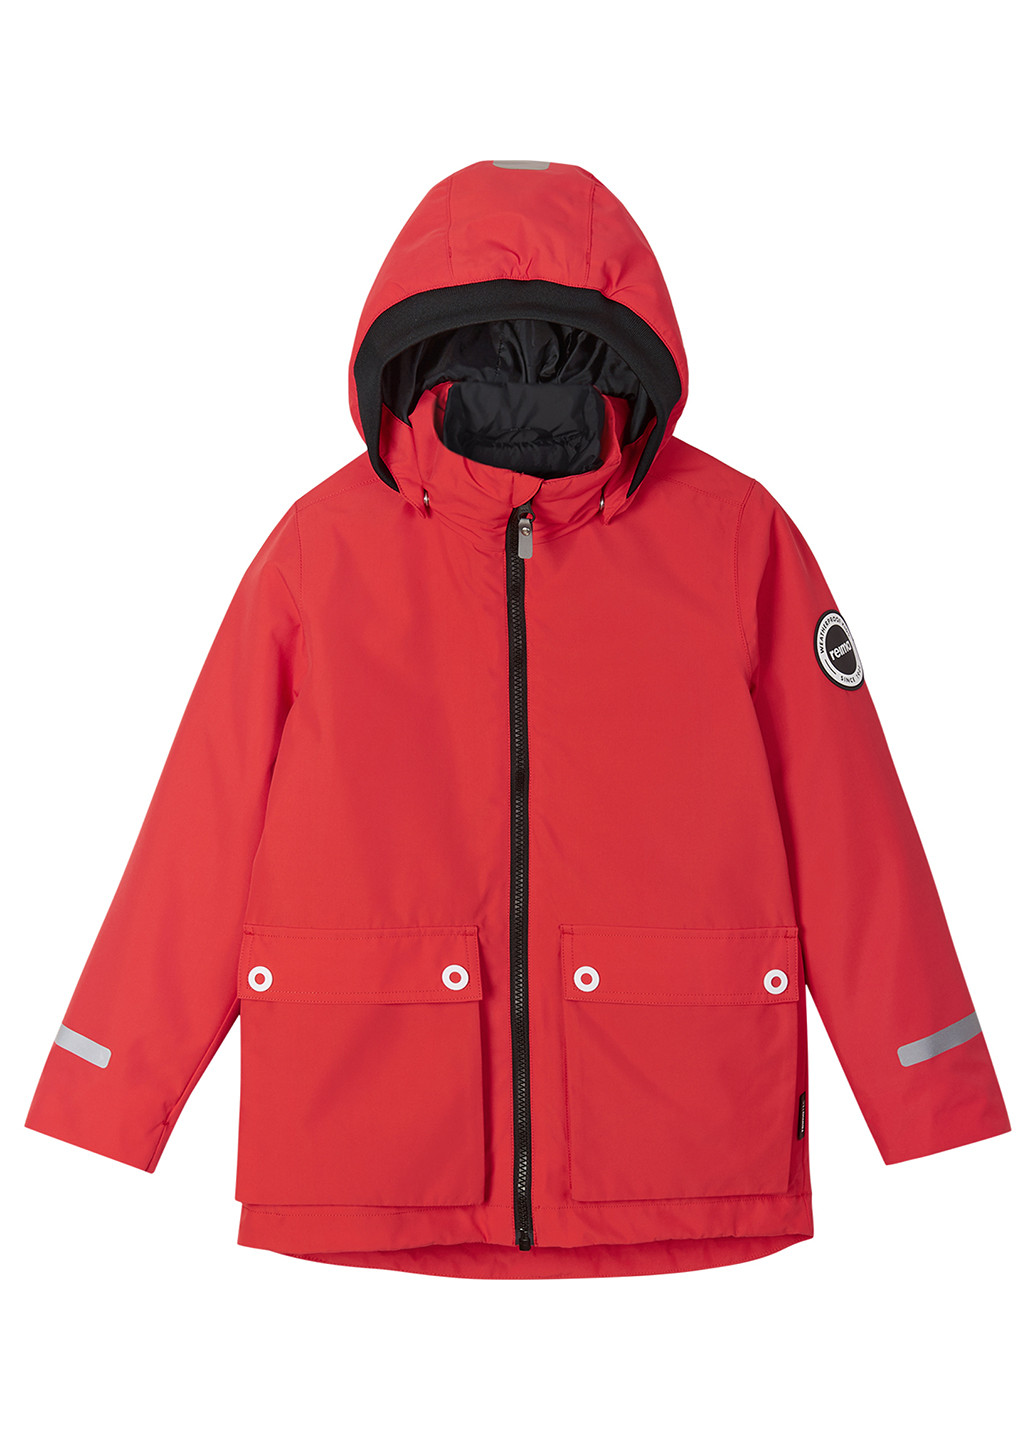 Красная зимняя куртка 3в1 Reima Syddi